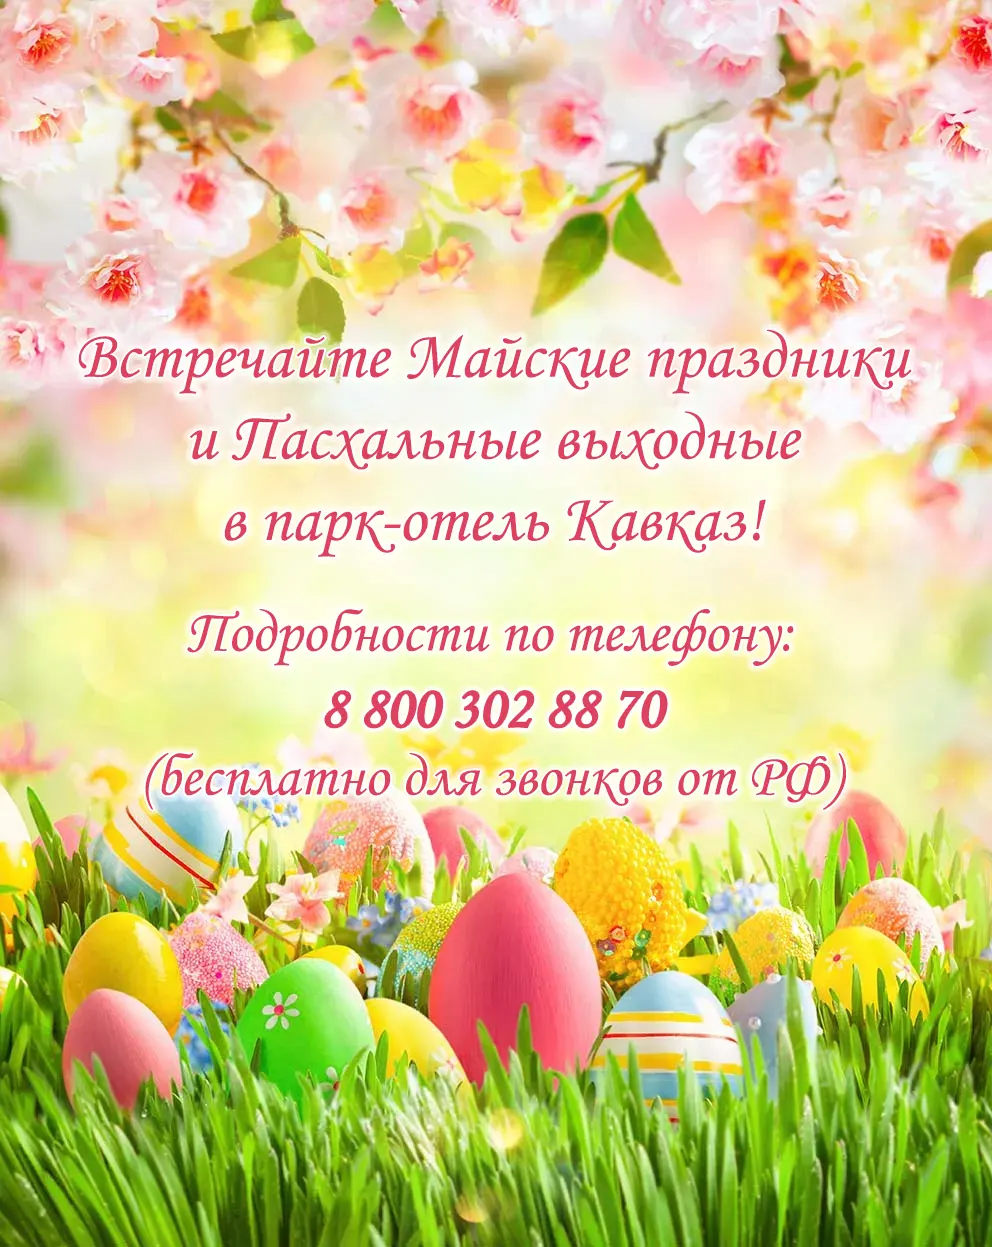 Встречайте Майские праздники и Пасхальные выходные в парк-отель Кавказ!